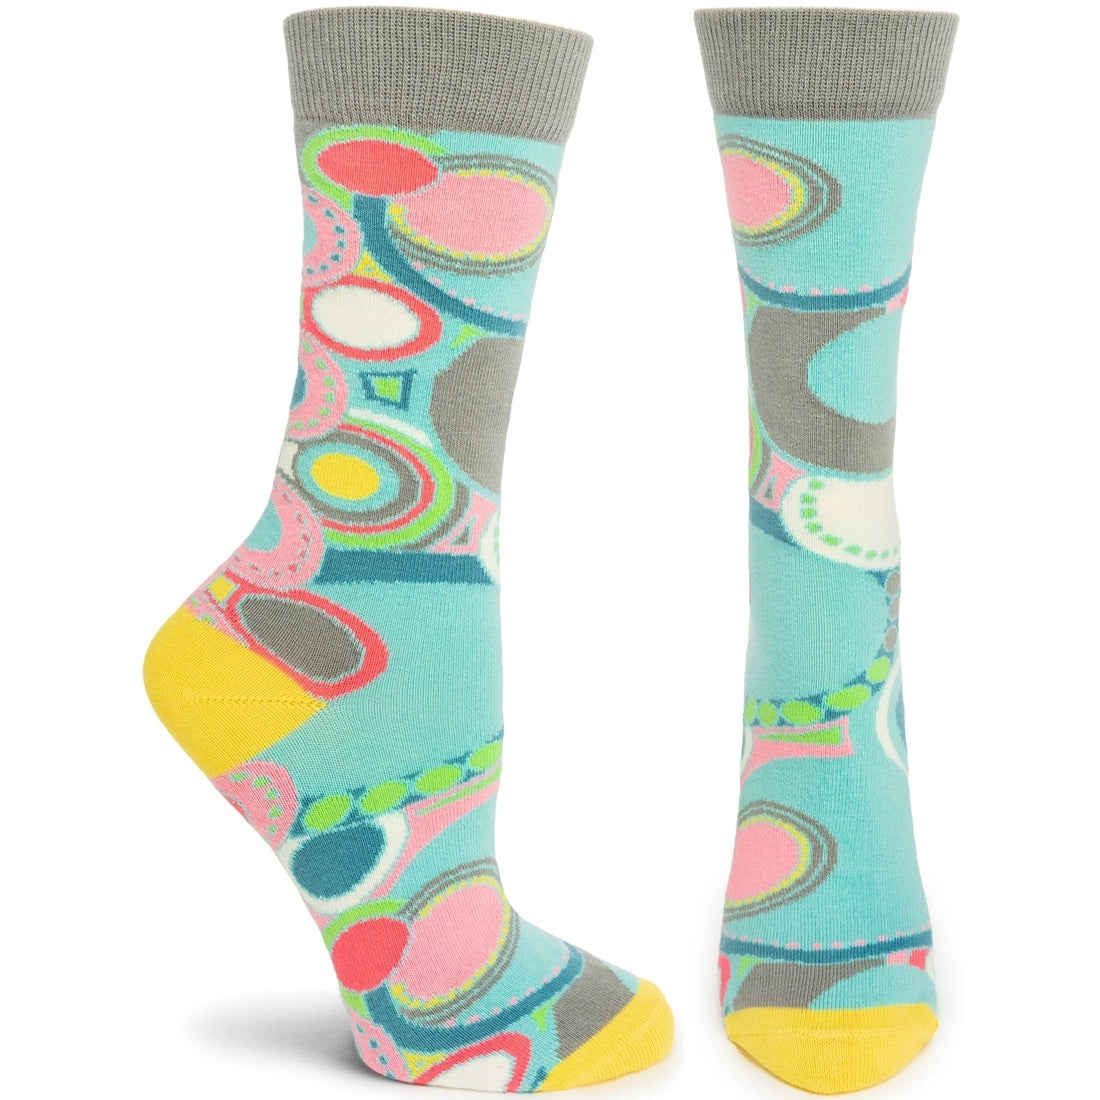 Socks from Ozone Design